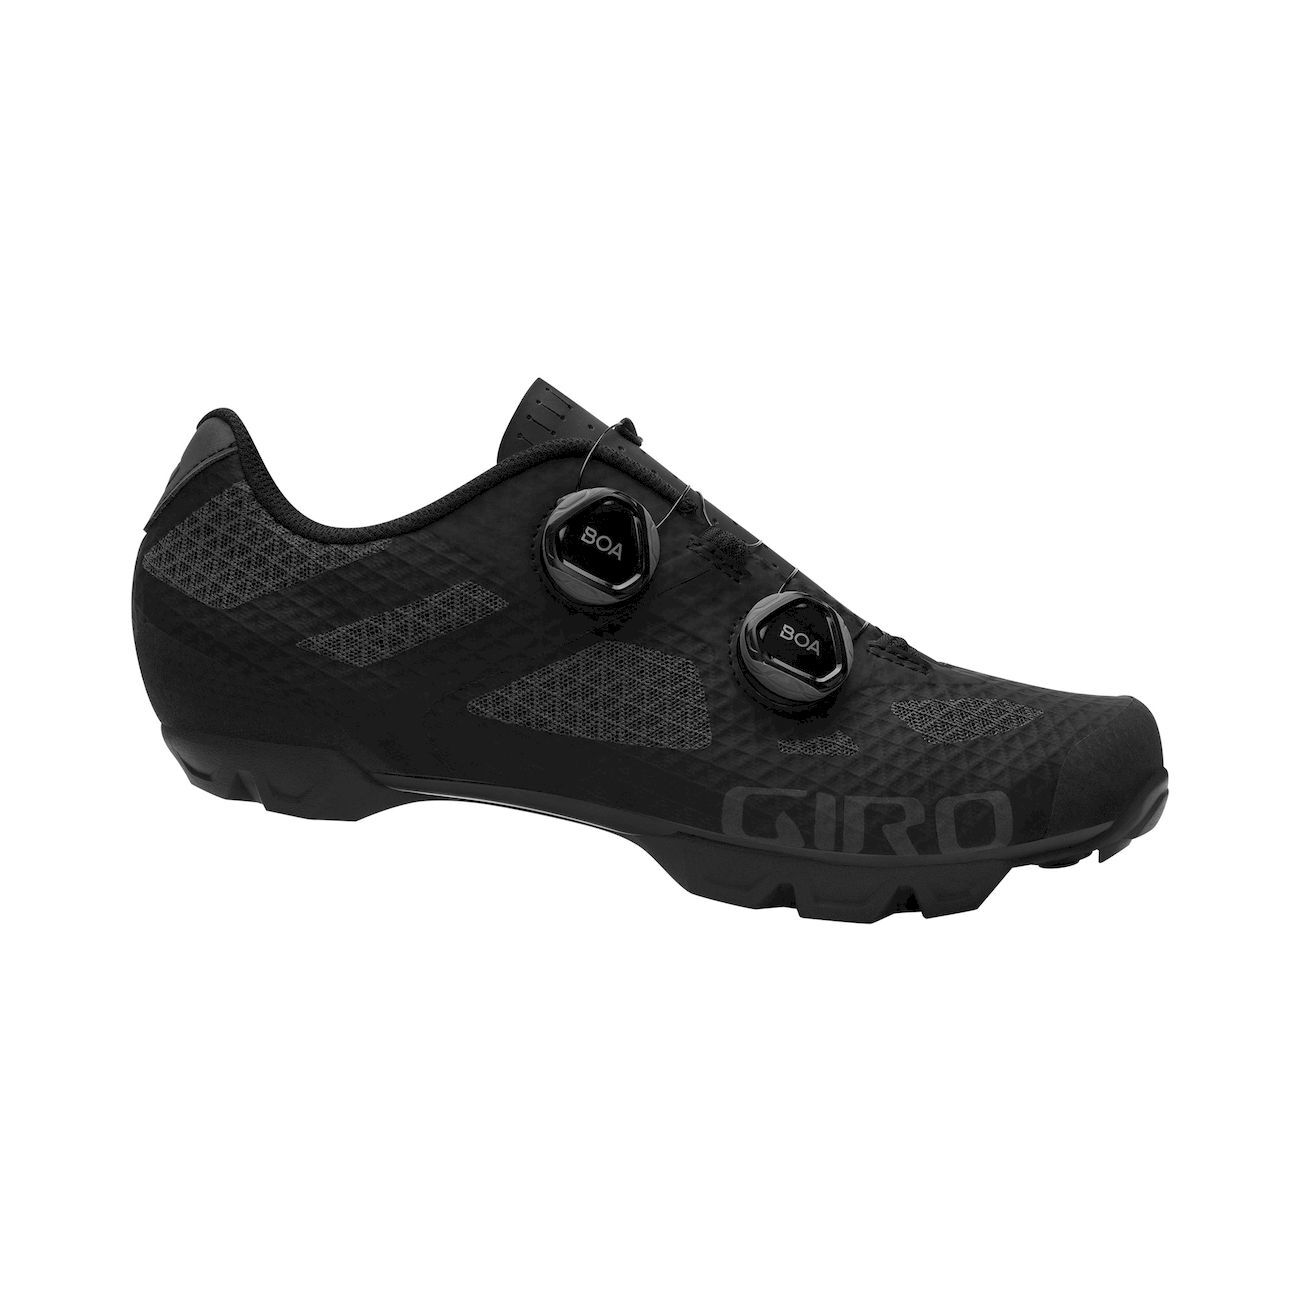 Giro Sector - Mountain Bike shoes - Men's